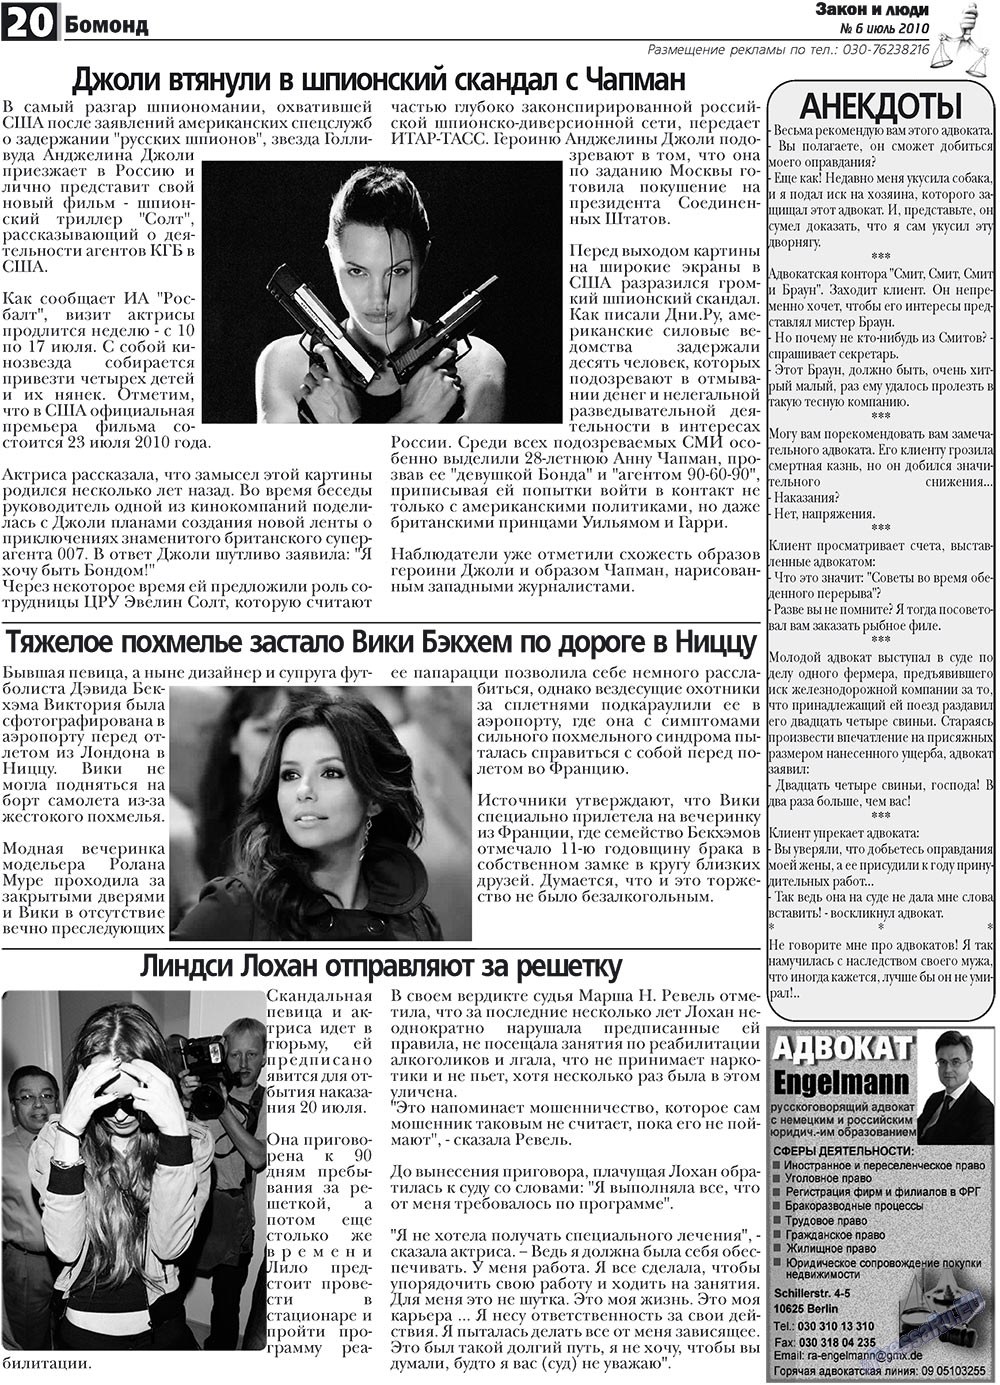 Закон и люди, газета. 2010 №6 стр.20